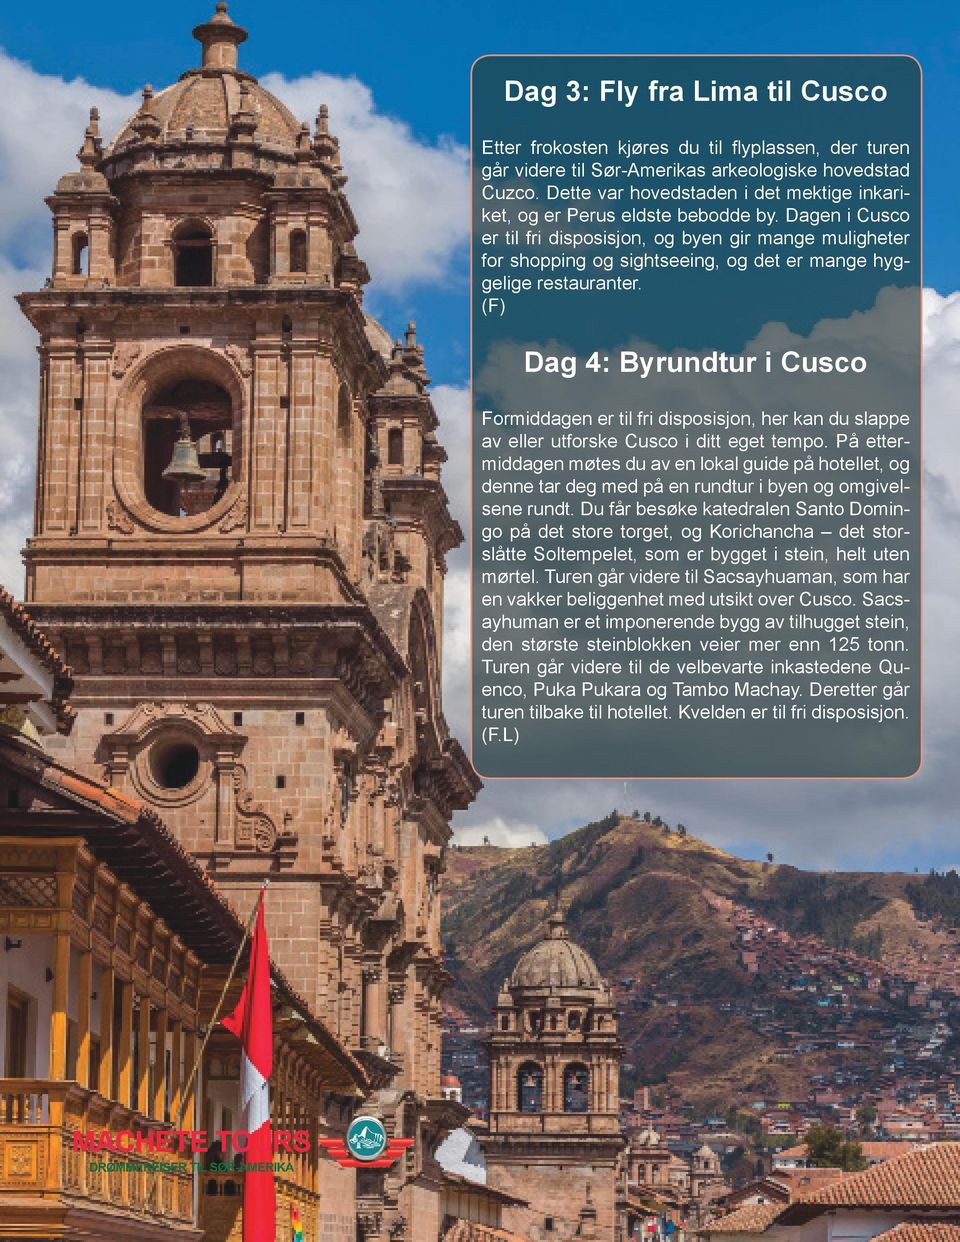 Dagen i Cusco er til fri disposisjon, og byen gir mange muligheter for shopping og sightseeing, og det er mange hyggelige restauranter.